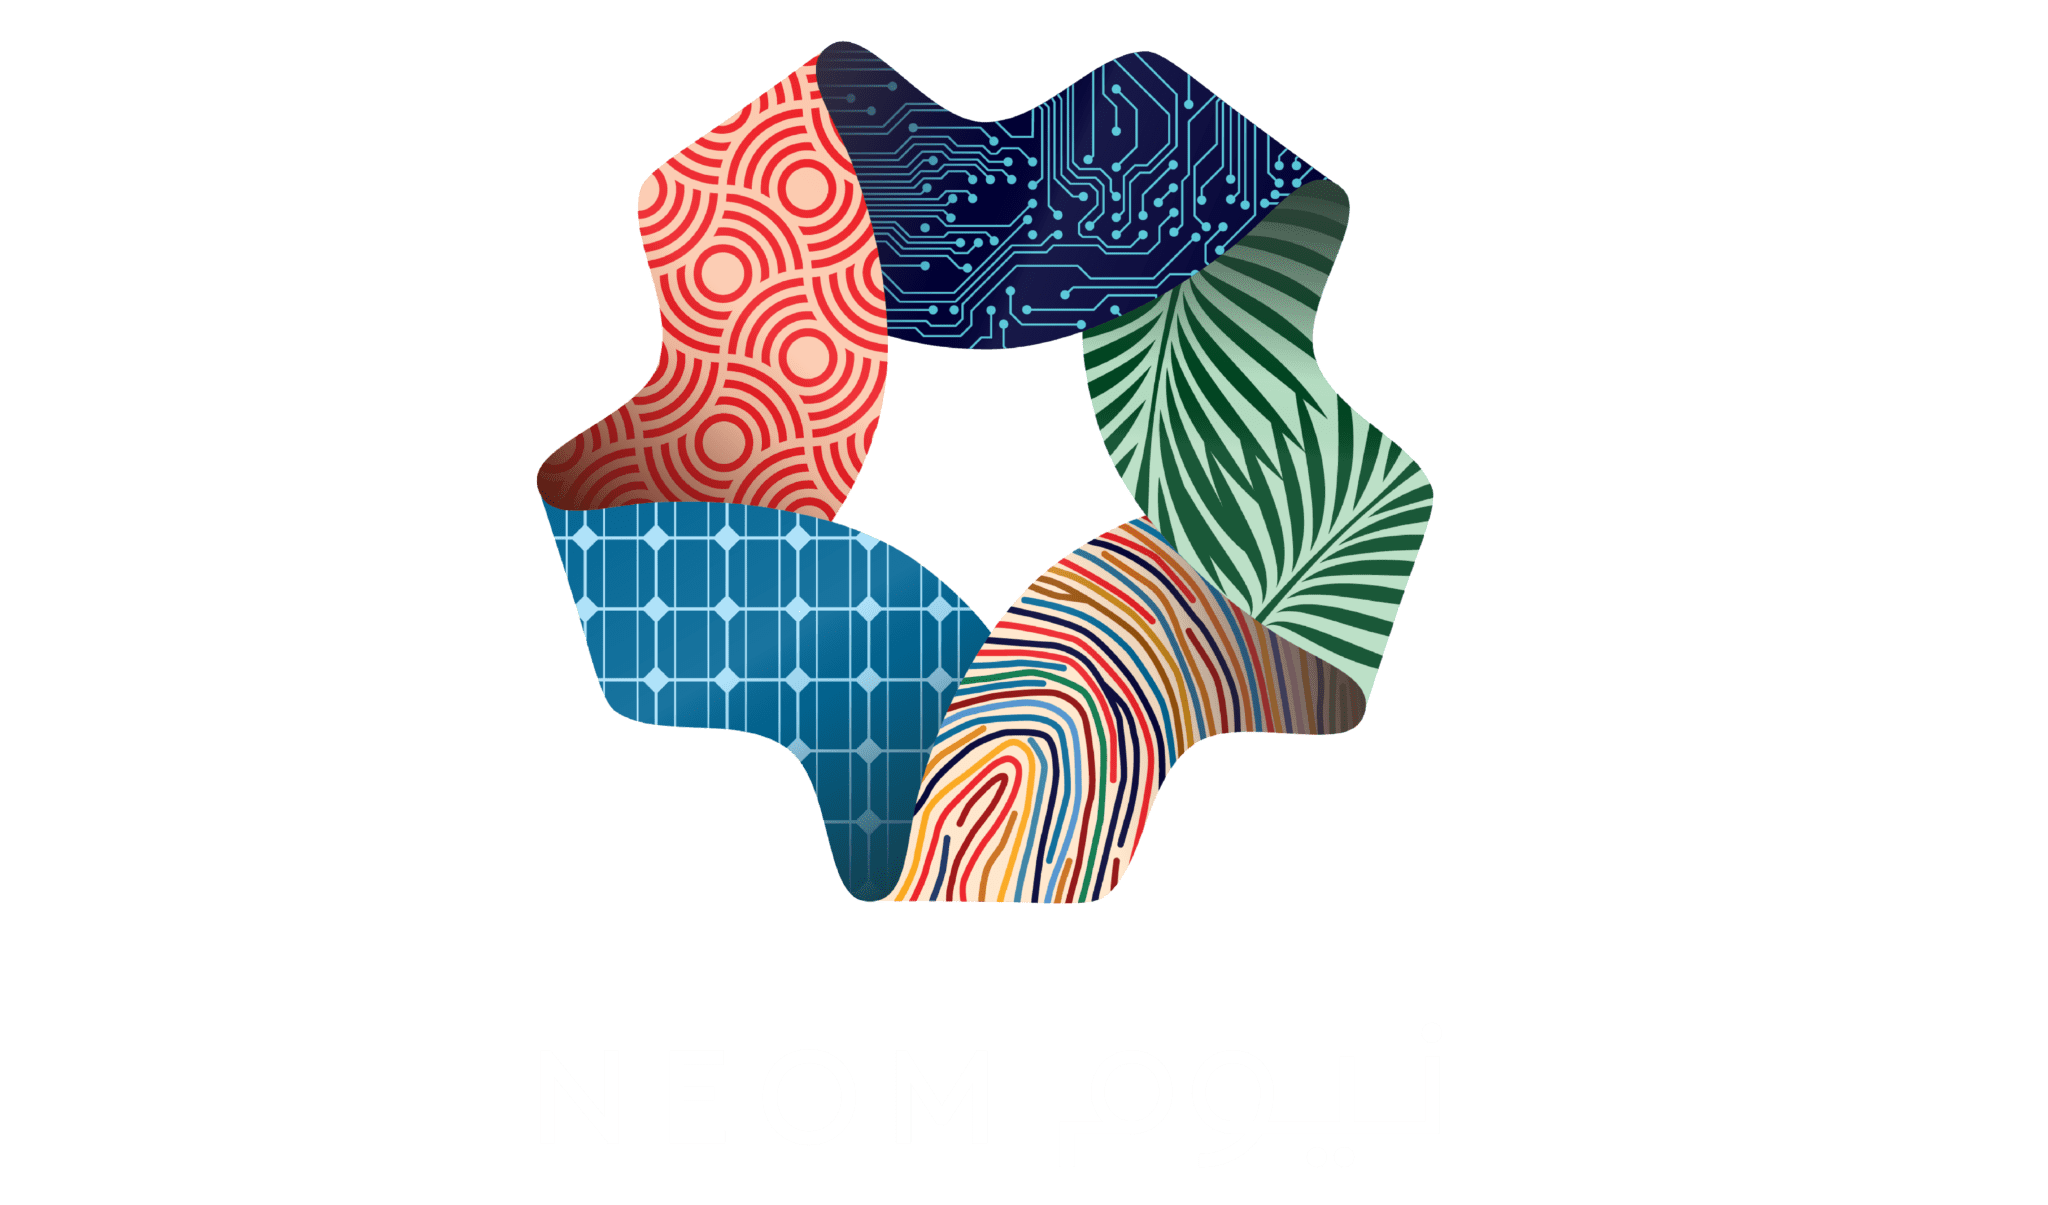 The neom logo